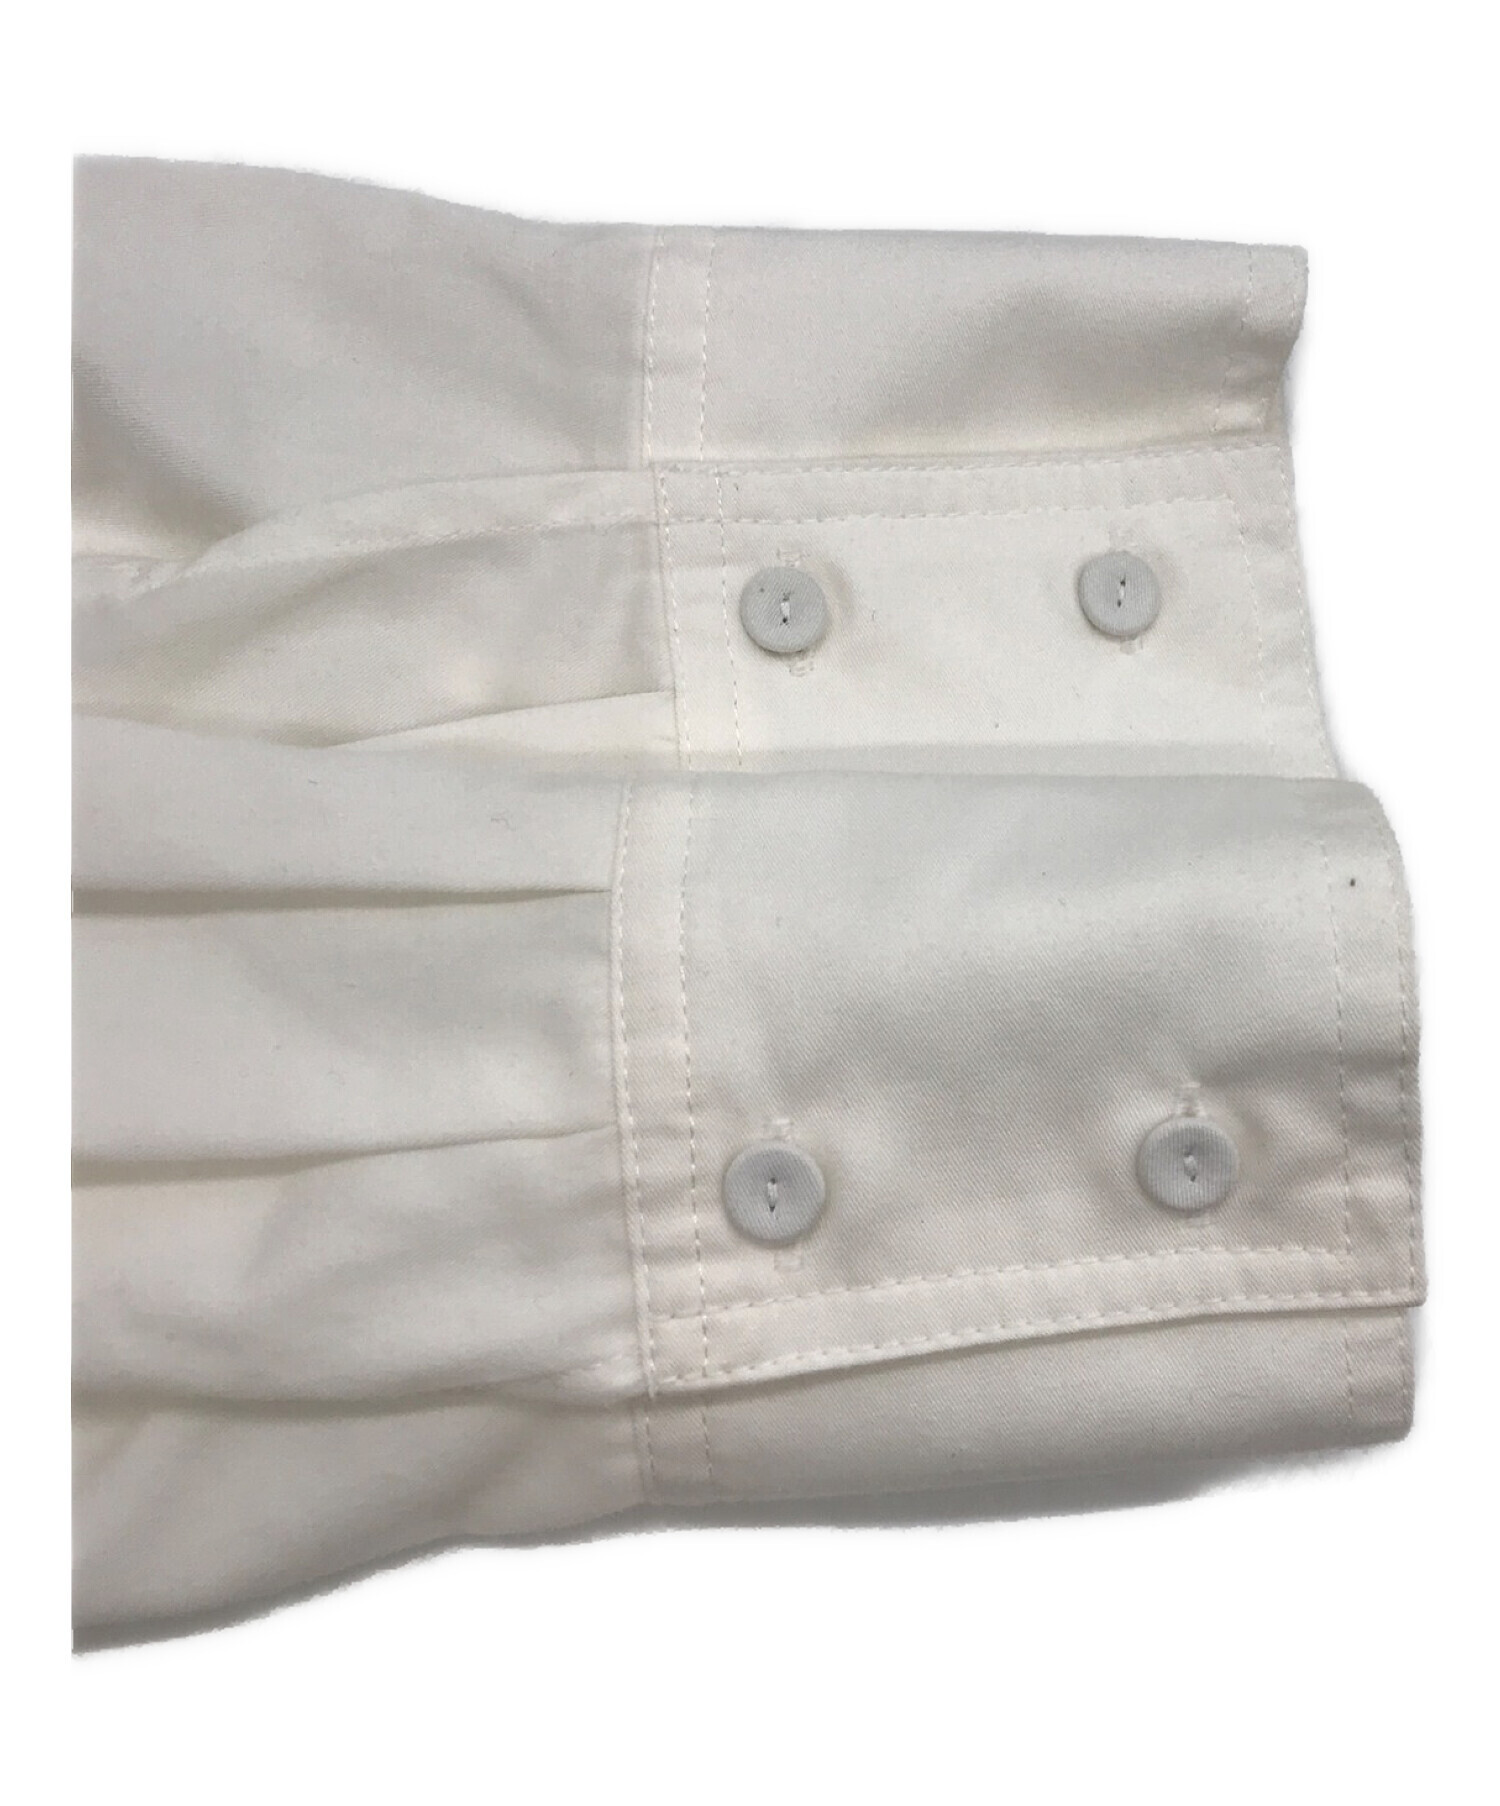 machatt (マチャット) タキシードドレスシャツ ホワイト サイズ:表記なし